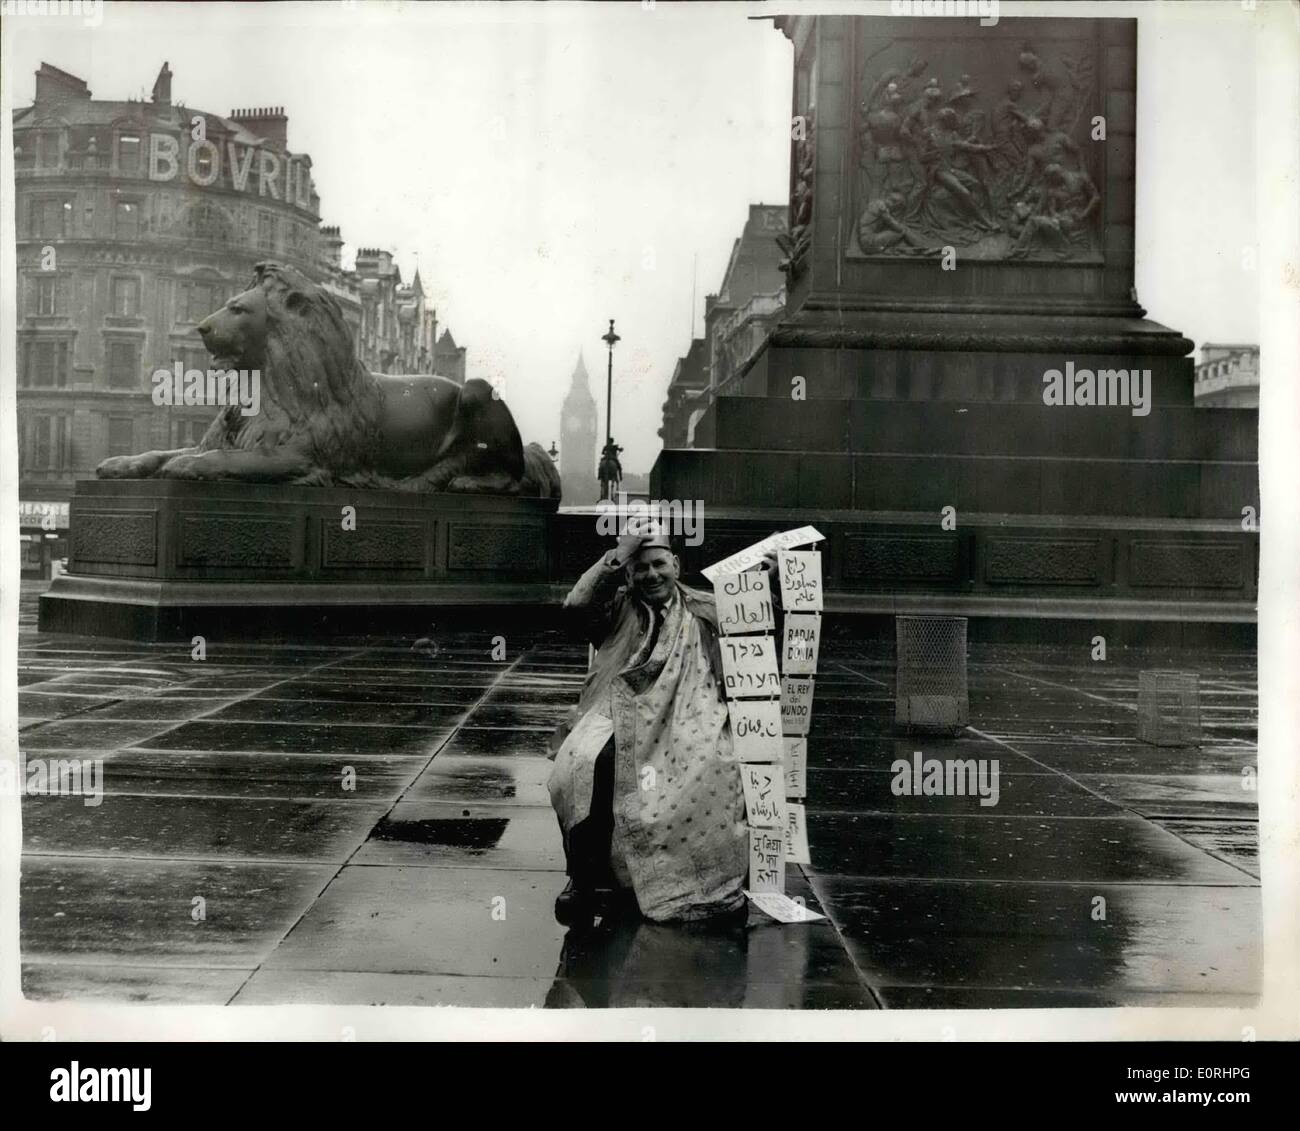 11 novembre 1959 - soi-disant ''King'' lui-même de l'état ''Asie'' à Trafalgar square, Mgr Homer A. Tomlinson, de New York, qui prétend qu'il est ''le monde'' ajouté toute l'Asie à ses ''realm'' ''au cours de la cérémonie de couronnement'' à Trafalgar Square, Londres, aujourd'hui lorsqu'il a établi son trône portable vêtue d'une robe rose fabriqué à partir d'un sari et placé une couronne d'or jaune sur sa tête, ''King'' Homer est le chef d'une secte américaine, l'église de Dieu, fondée par le père dans une cabane de montagne en arrière dans les années 30. Il dit que sa mission est d'apporter des exploits de gens de toutes les nations Banque D'Images